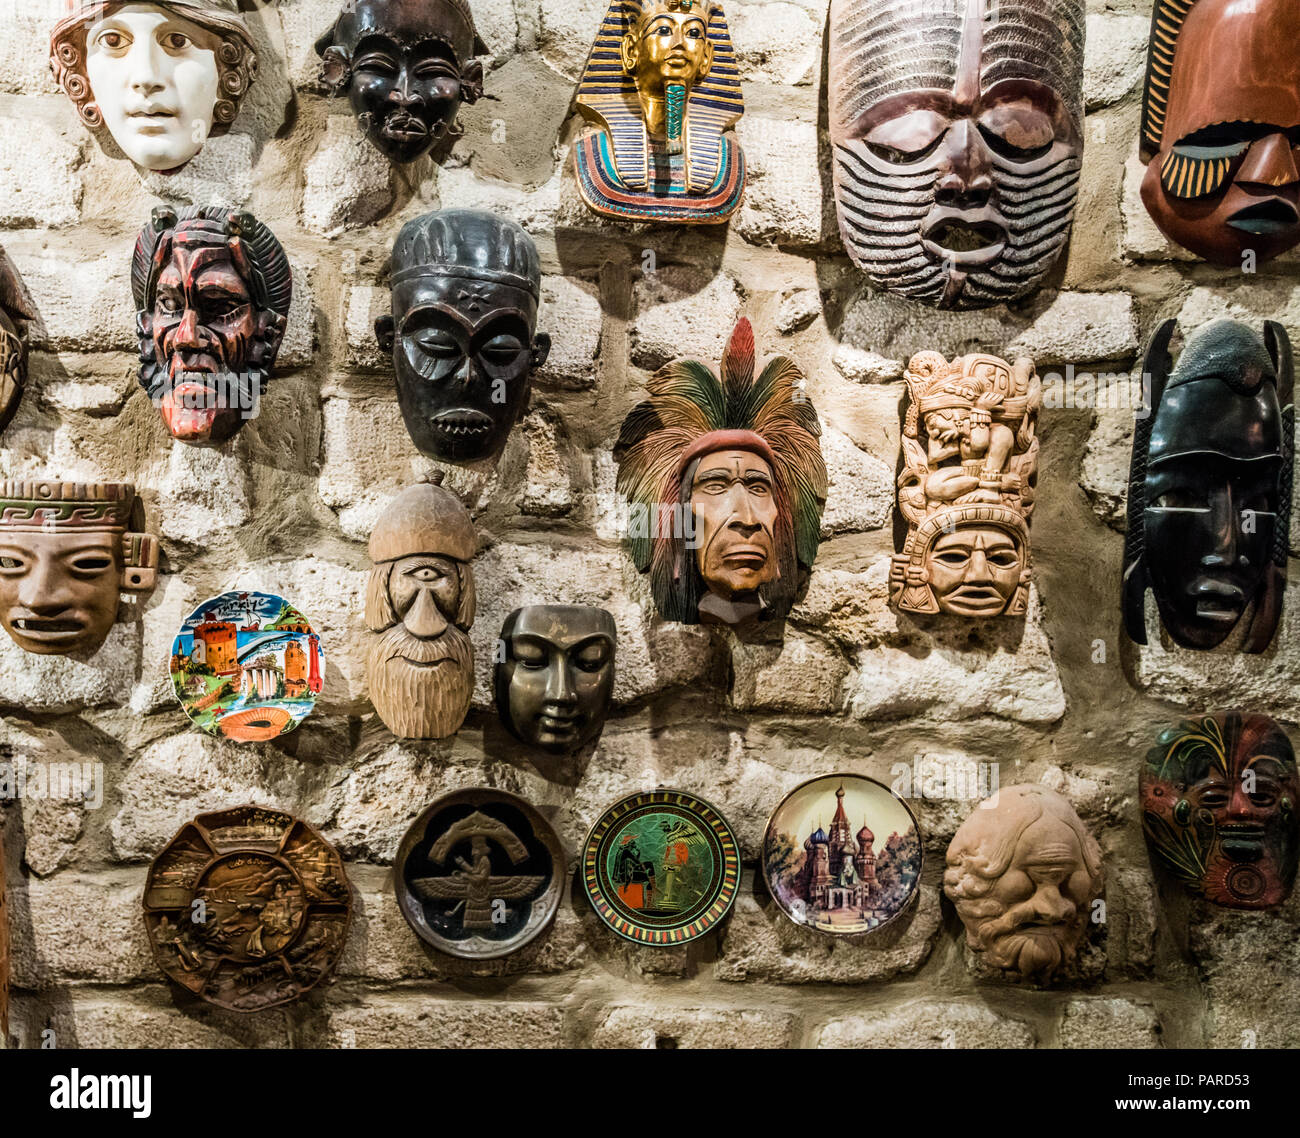 Masken hängen an der Wand. Sammlung von Masken Stockfotografie - Alamy